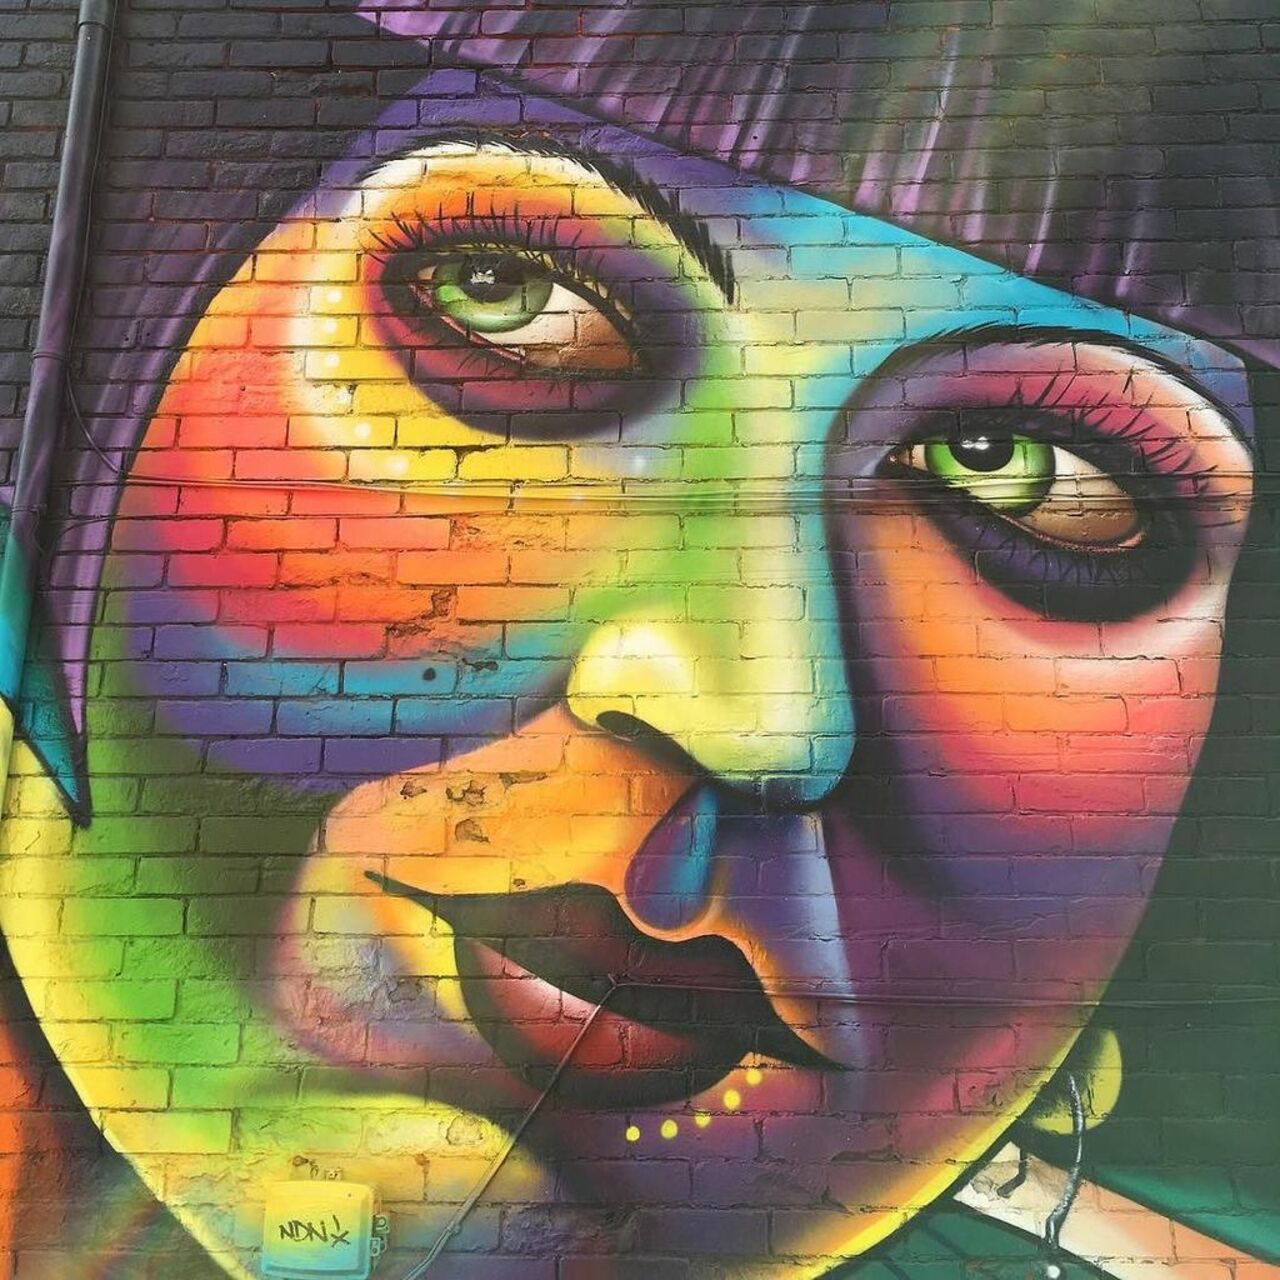 Portrait #graffiti #toronto #streetart #backalley #queenwest #art #face https://t.co/jfJyEeVith